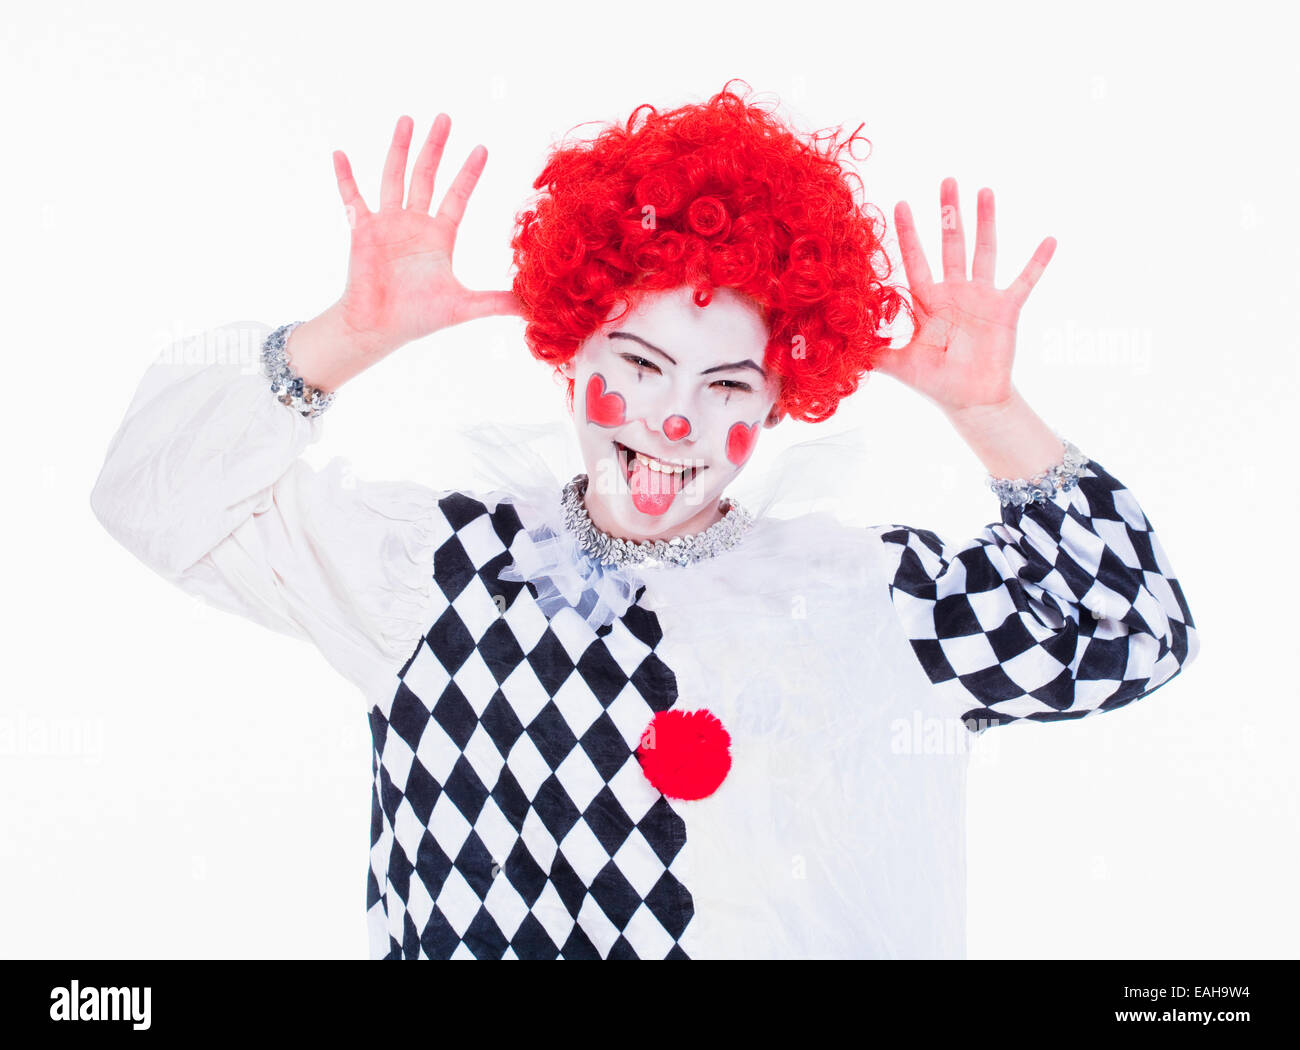 Petite fille en rouge perruque, maquillage et la tenue qui se fait passer pour un clown. Banque D'Images